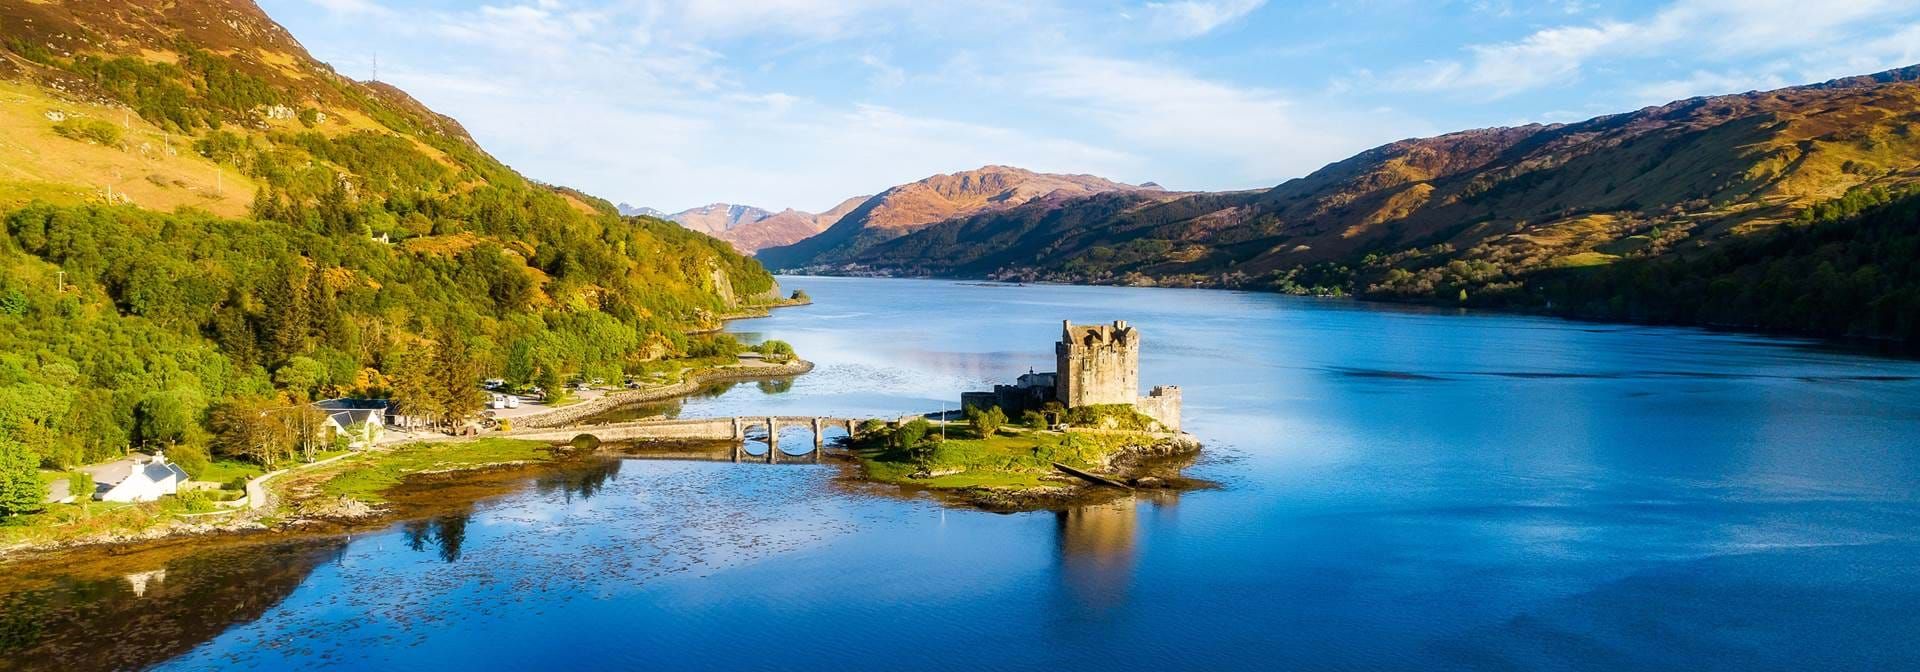 11 Best UK Castles To Visit